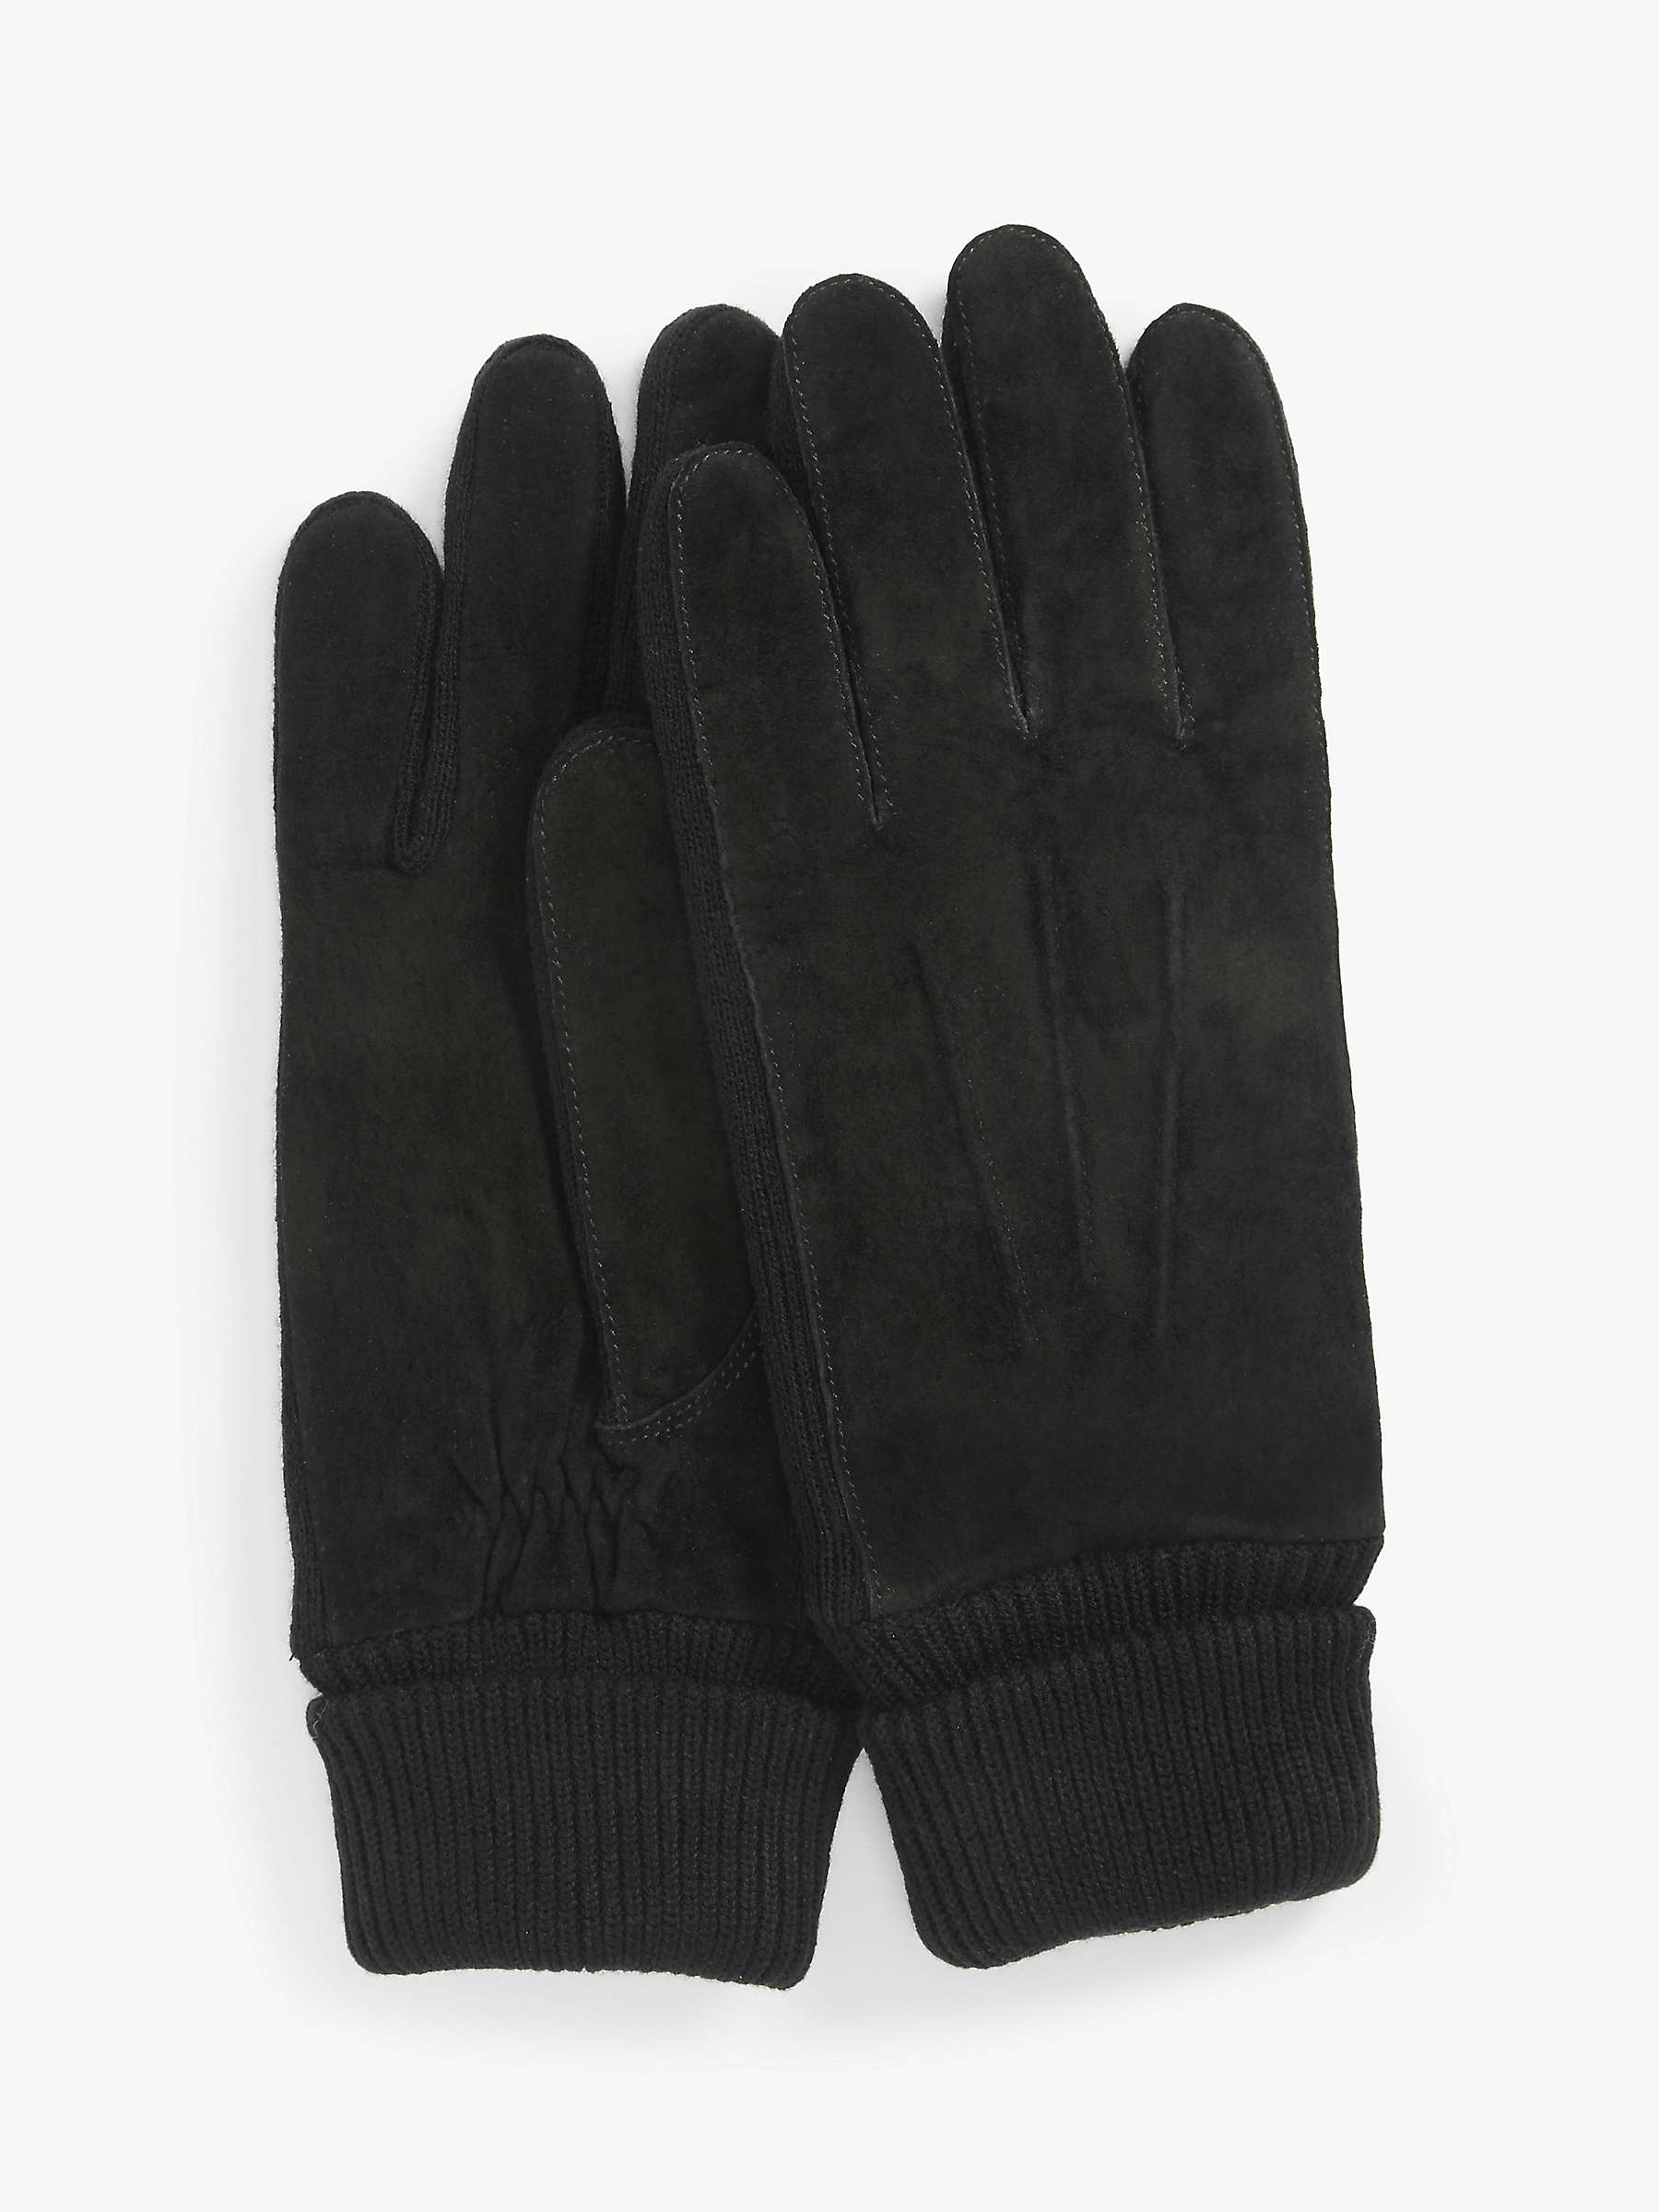 Buy John Lewis Suede Knit Gloves, Black Online at johnlewis.com